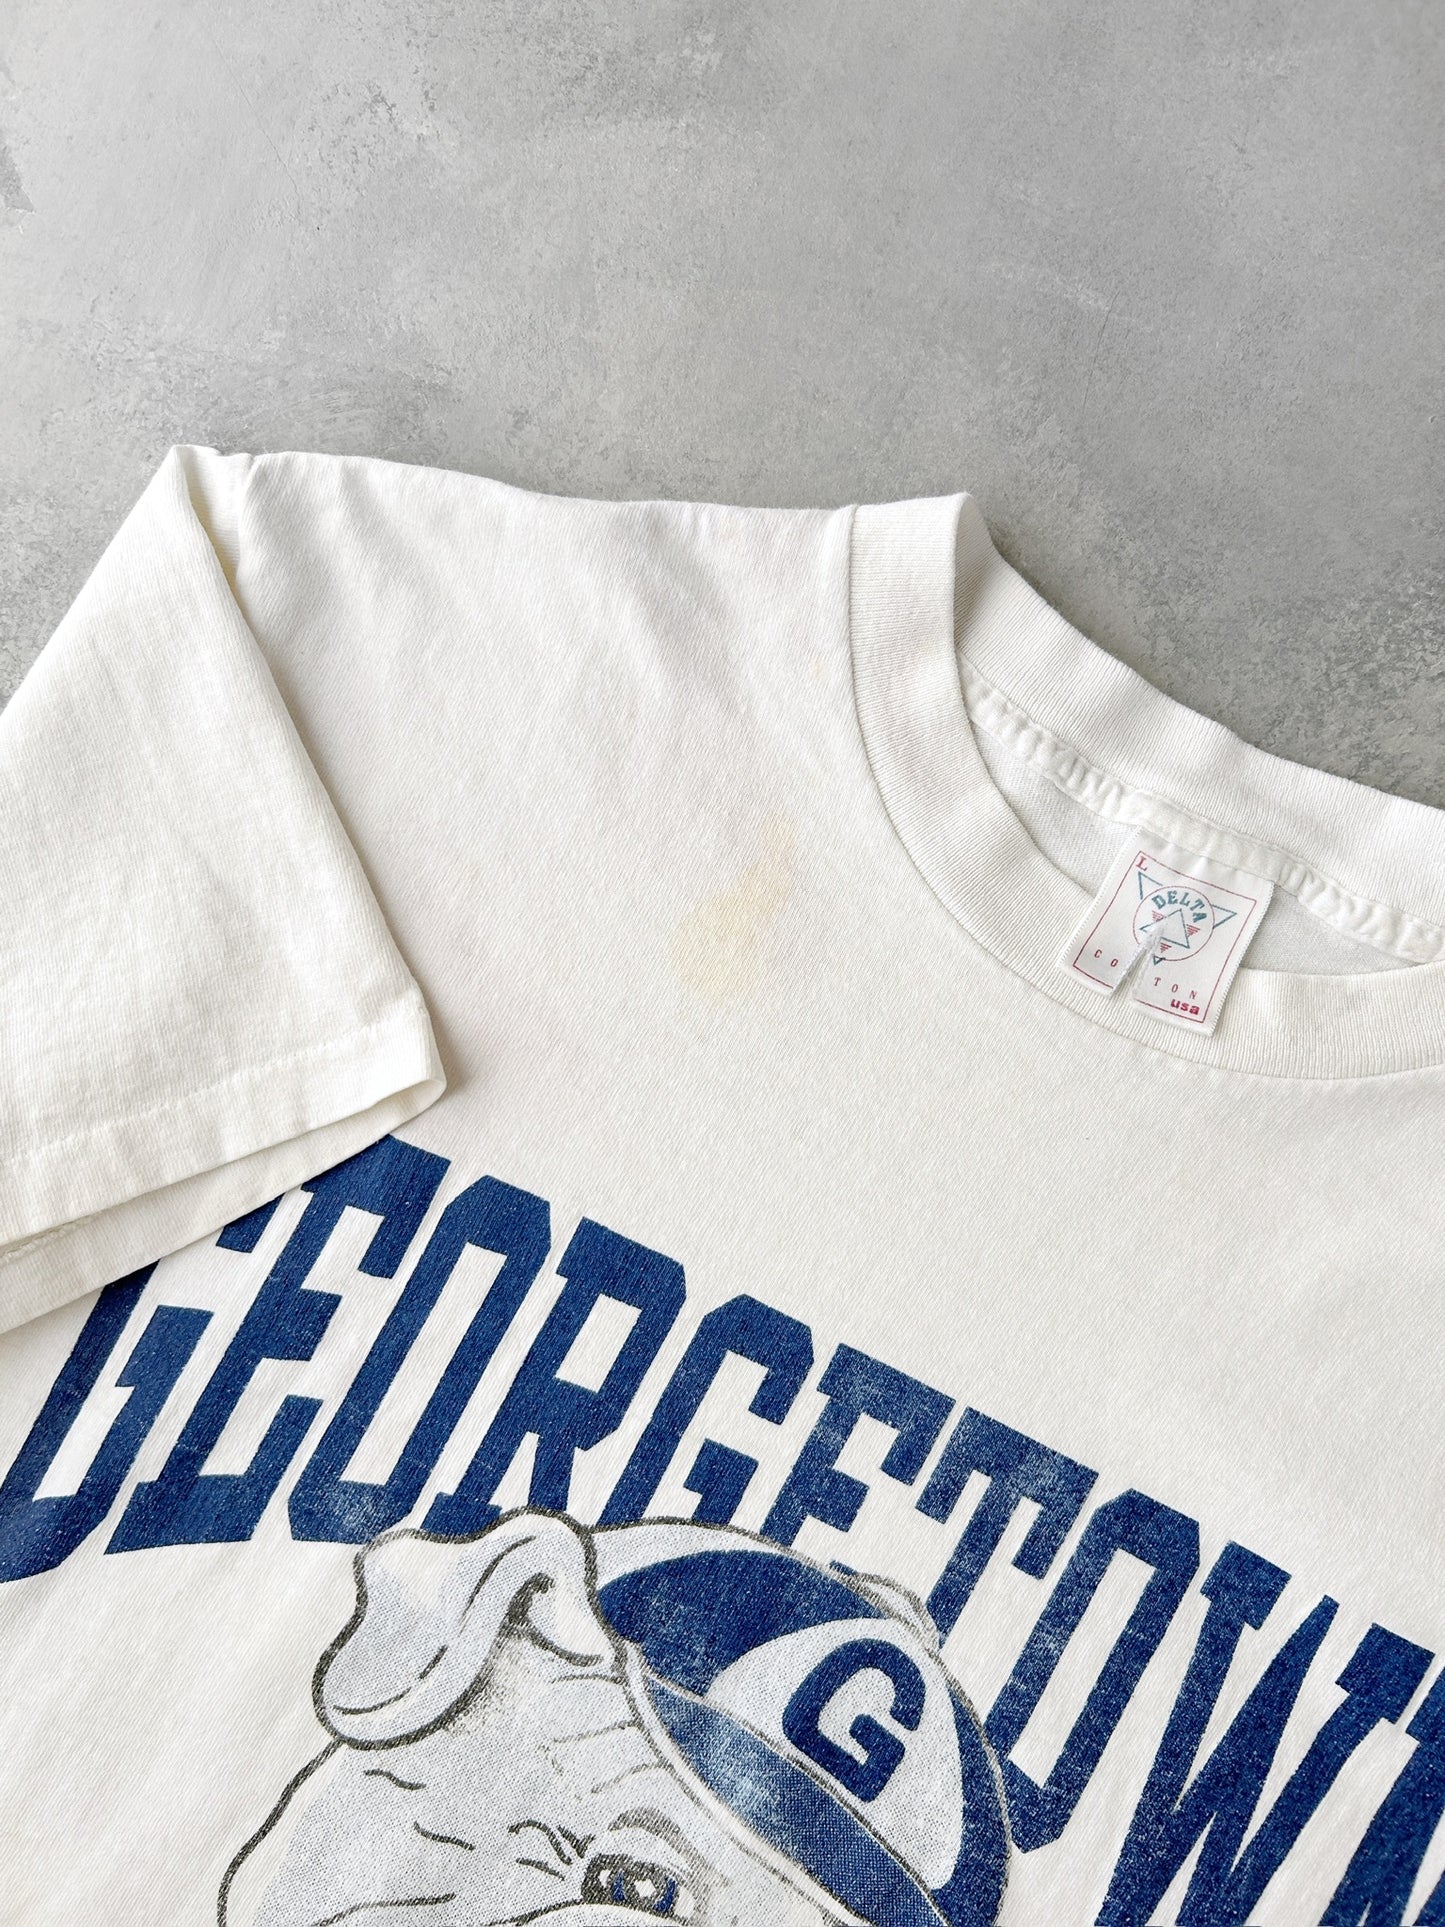 Georgetown Hoyas T-Shirt 90's - Large